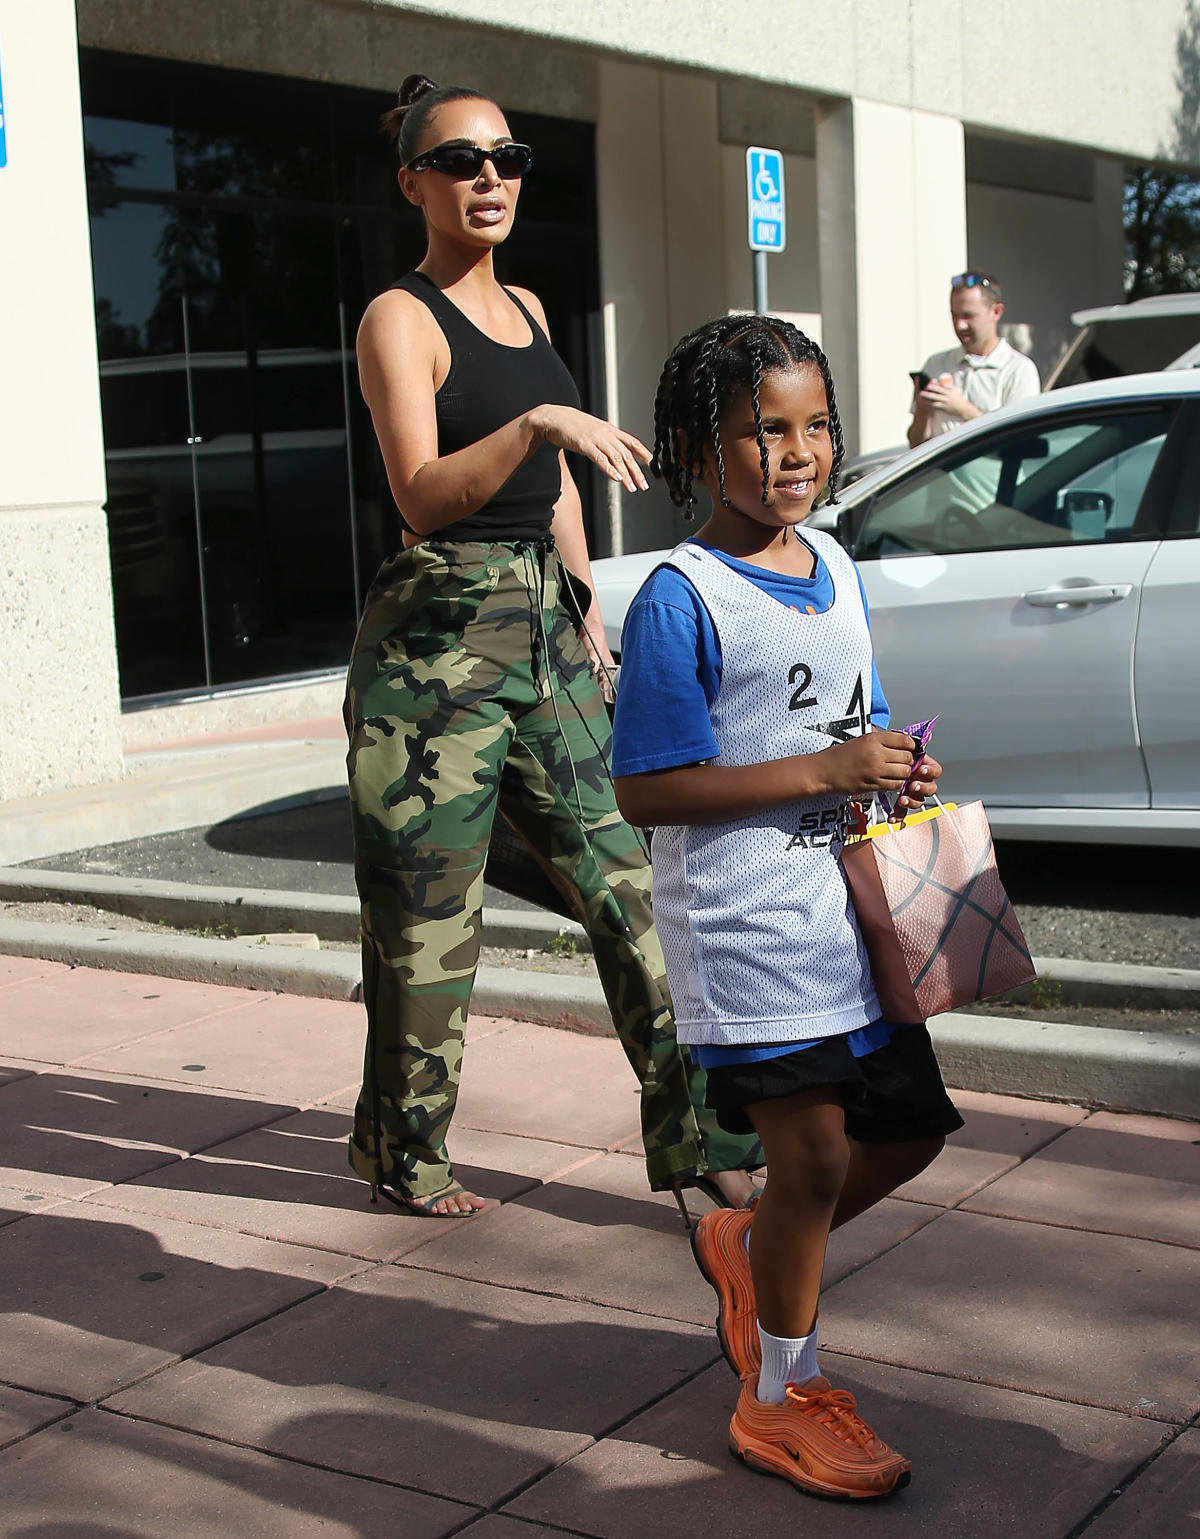 Kim Kardashian's Son Saint Wears Tristan Thompson Jersey at Lakers